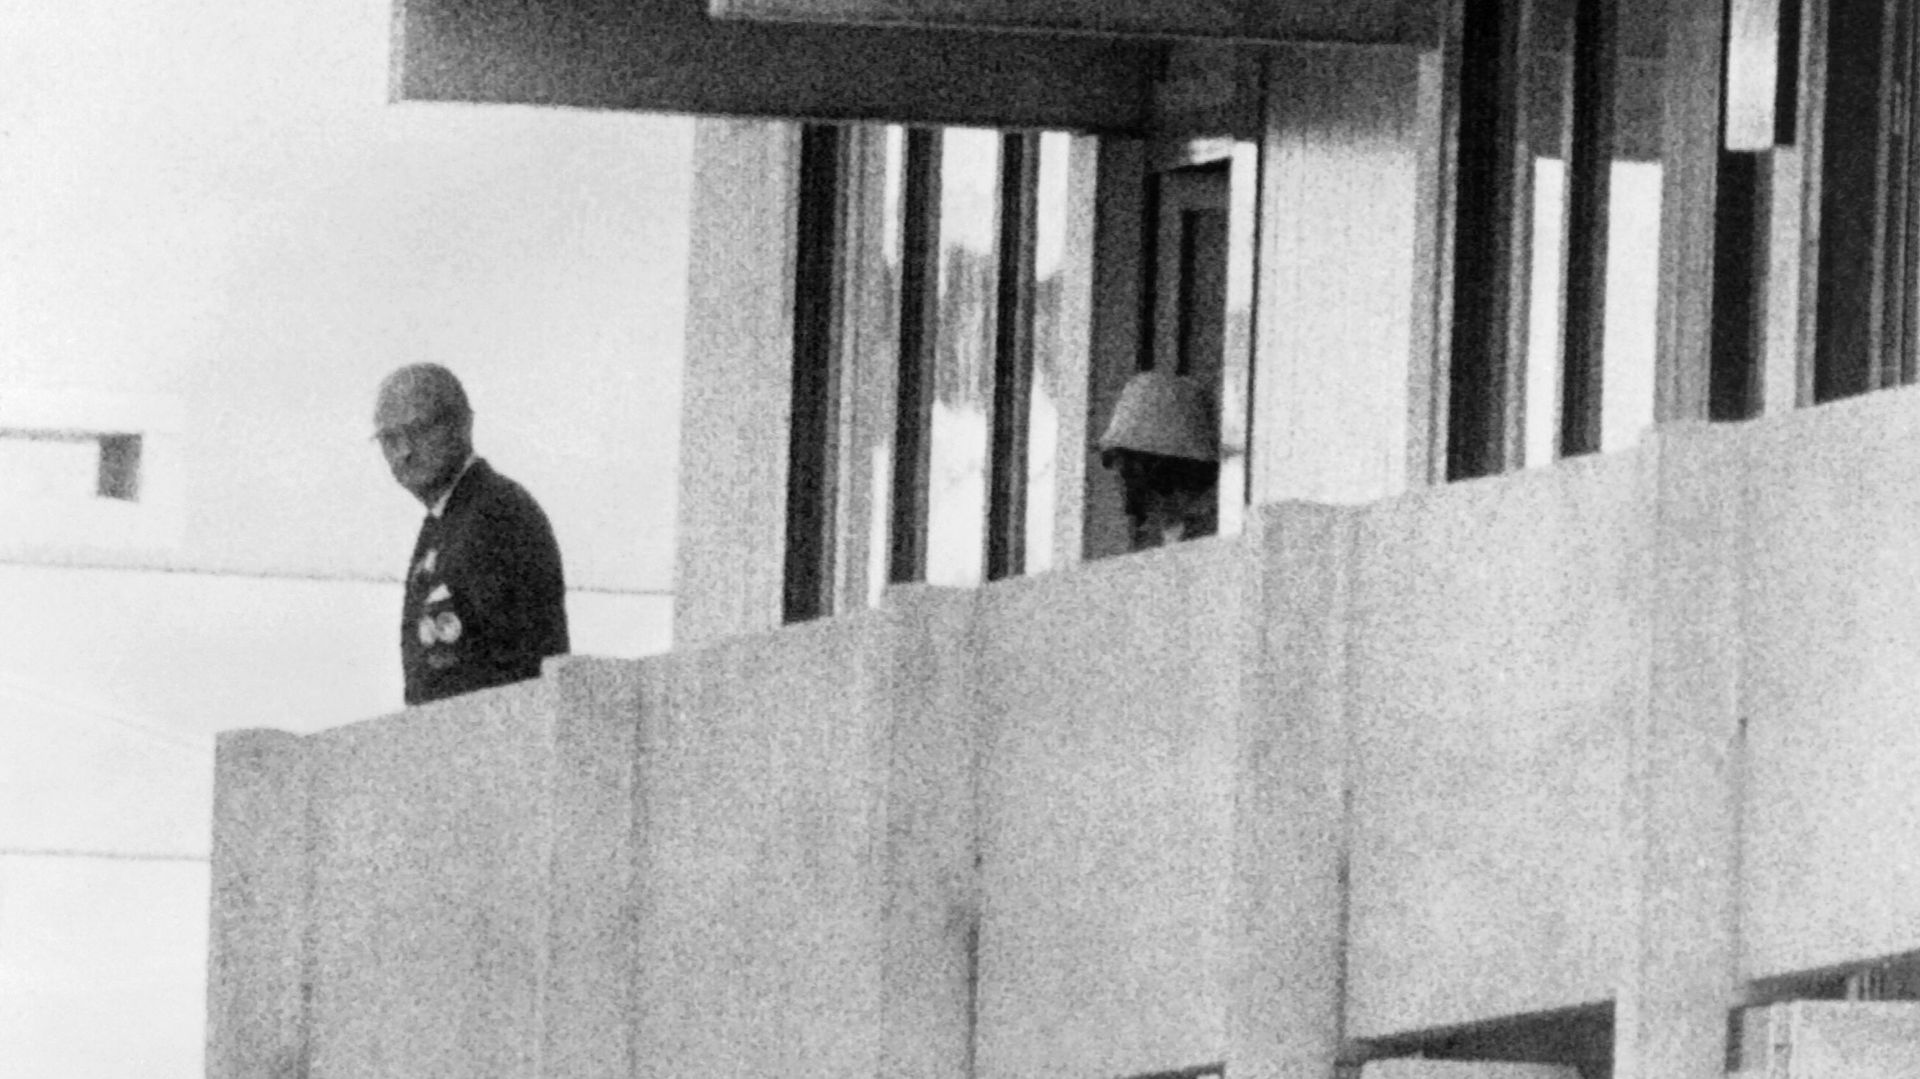 Un membre du commando palestinien apparaît sur le balcon de la délégation israélienne sous les yeux d’un officiel, le 5 septembre 1972, au village olympique de Munich.